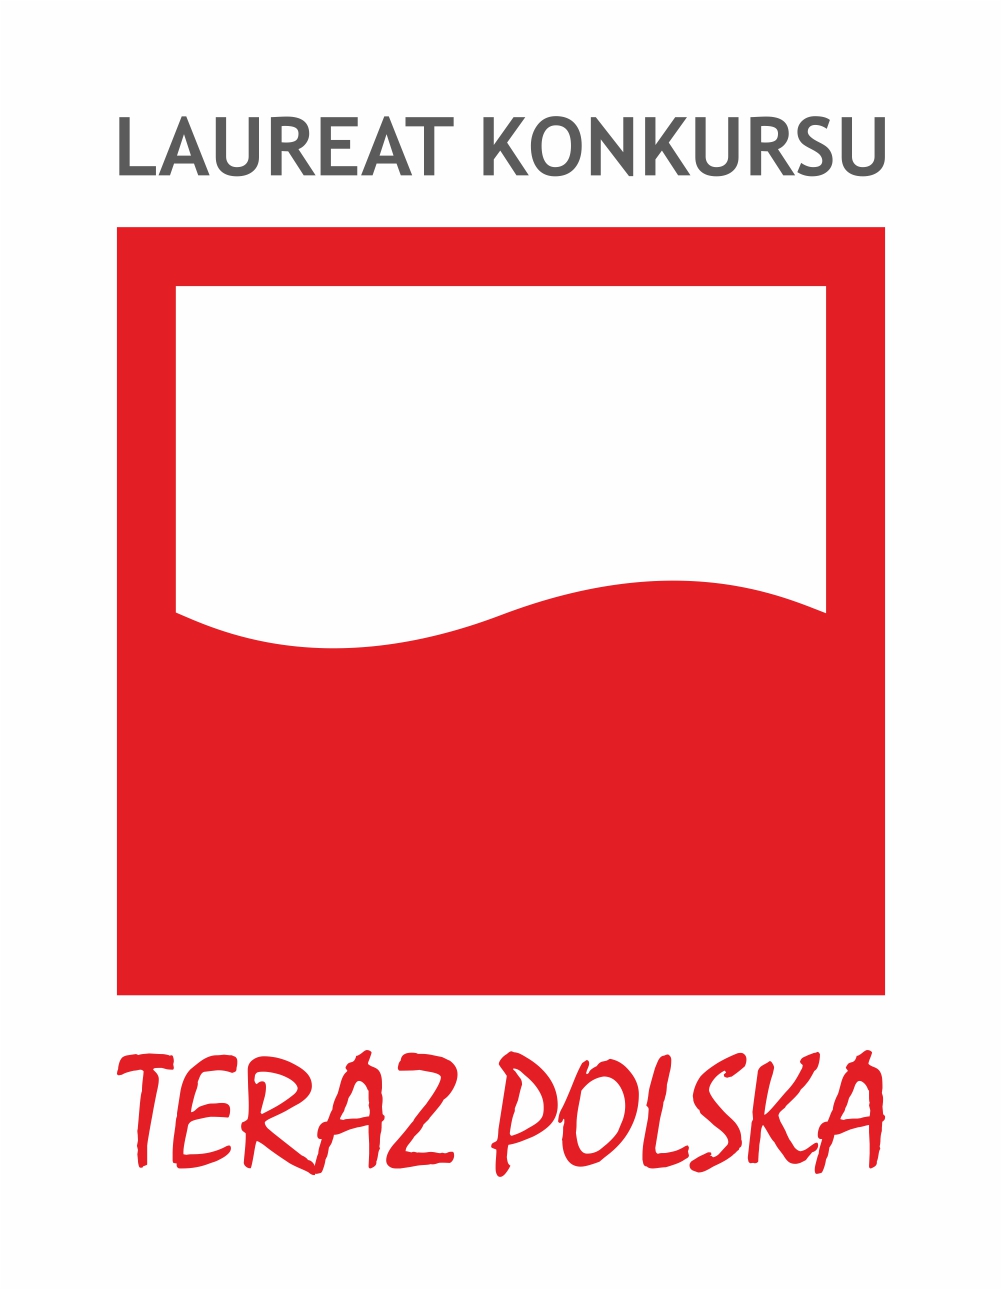 logo-Teraz-Polska-LAUREAT-KONKURSU.jpg